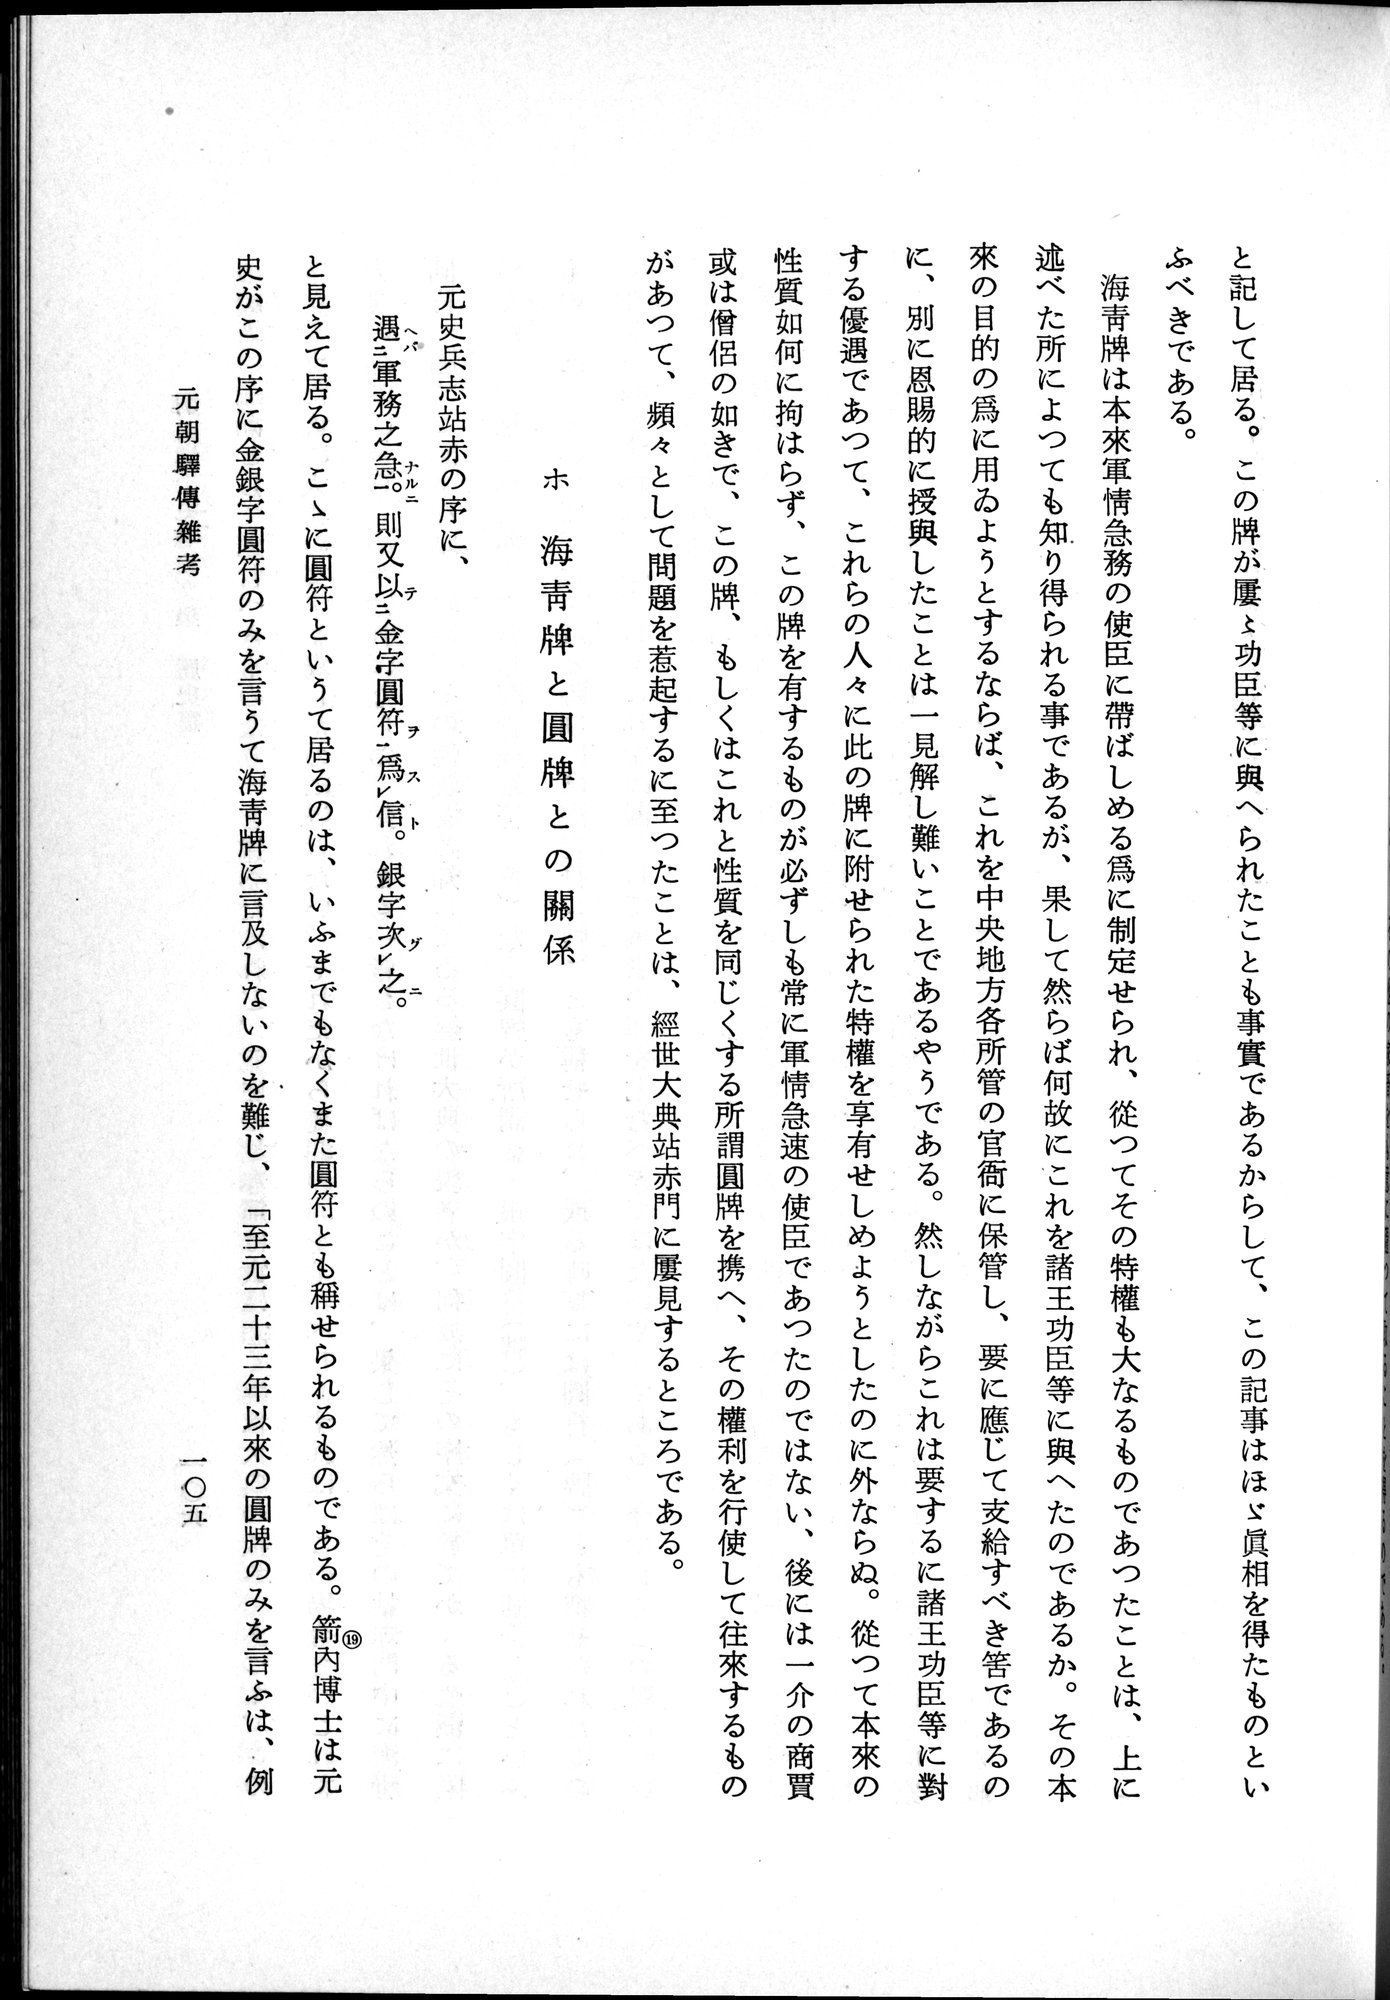 羽田博士史学論文集 : vol.1 / Page 143 (Grayscale High Resolution Image)